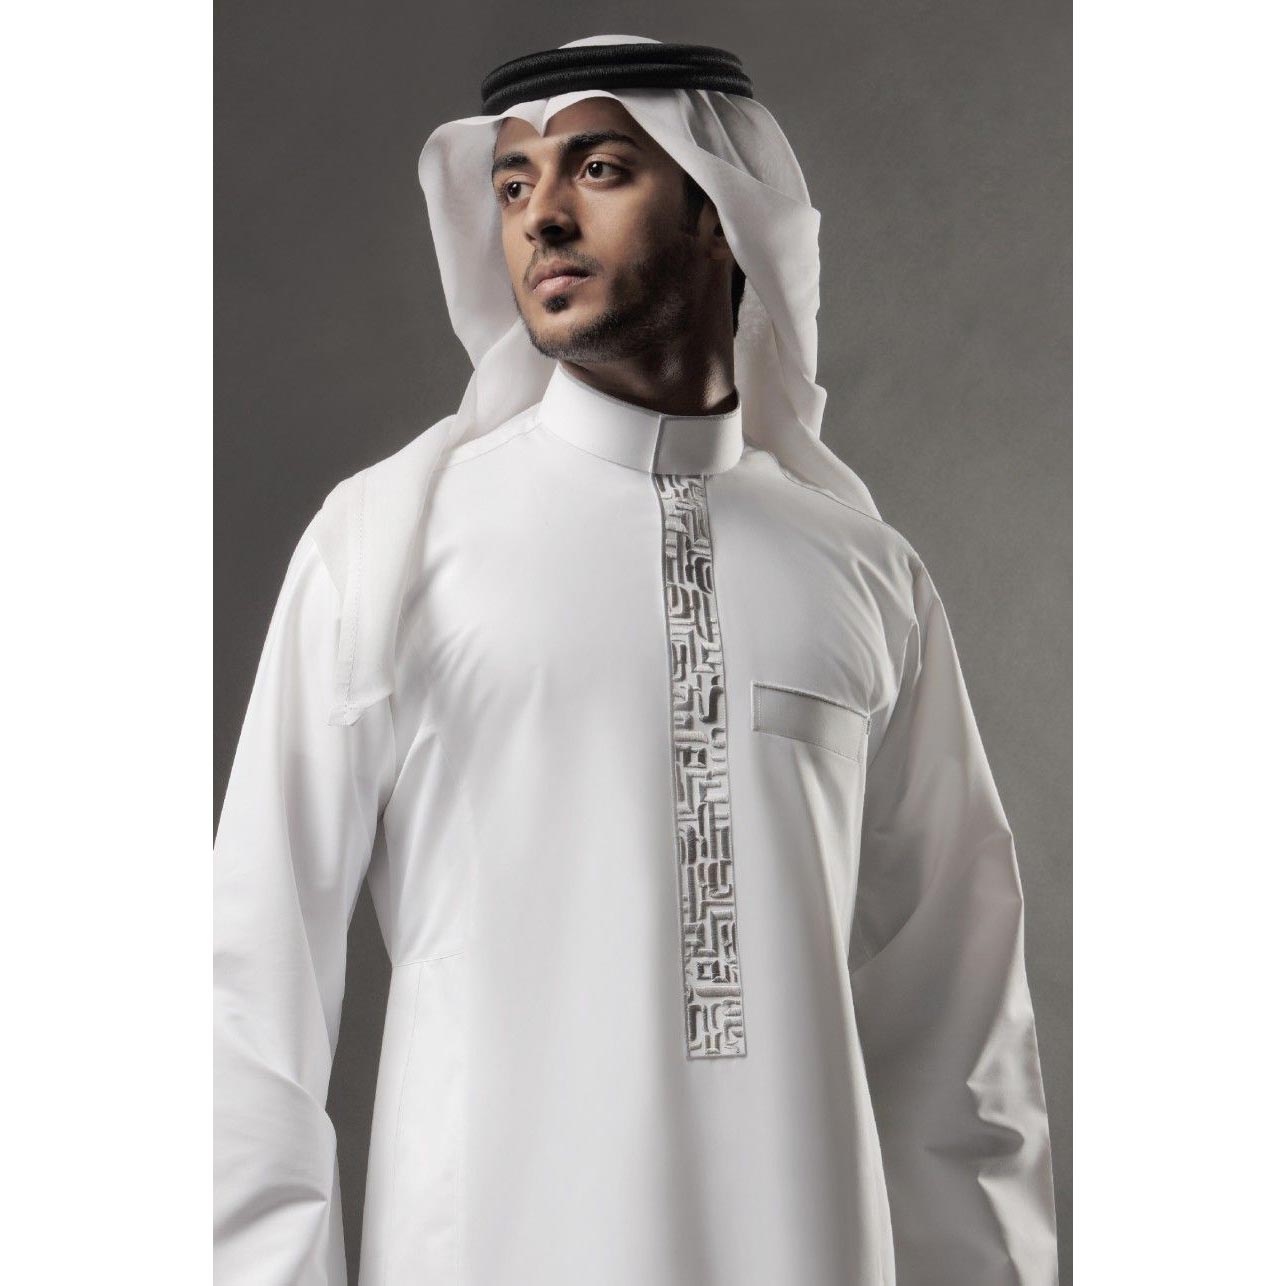 Продажа мусульманских. Тауб дишдаша. Камис мужская одежда мусульман. Арабский костюм мужской.